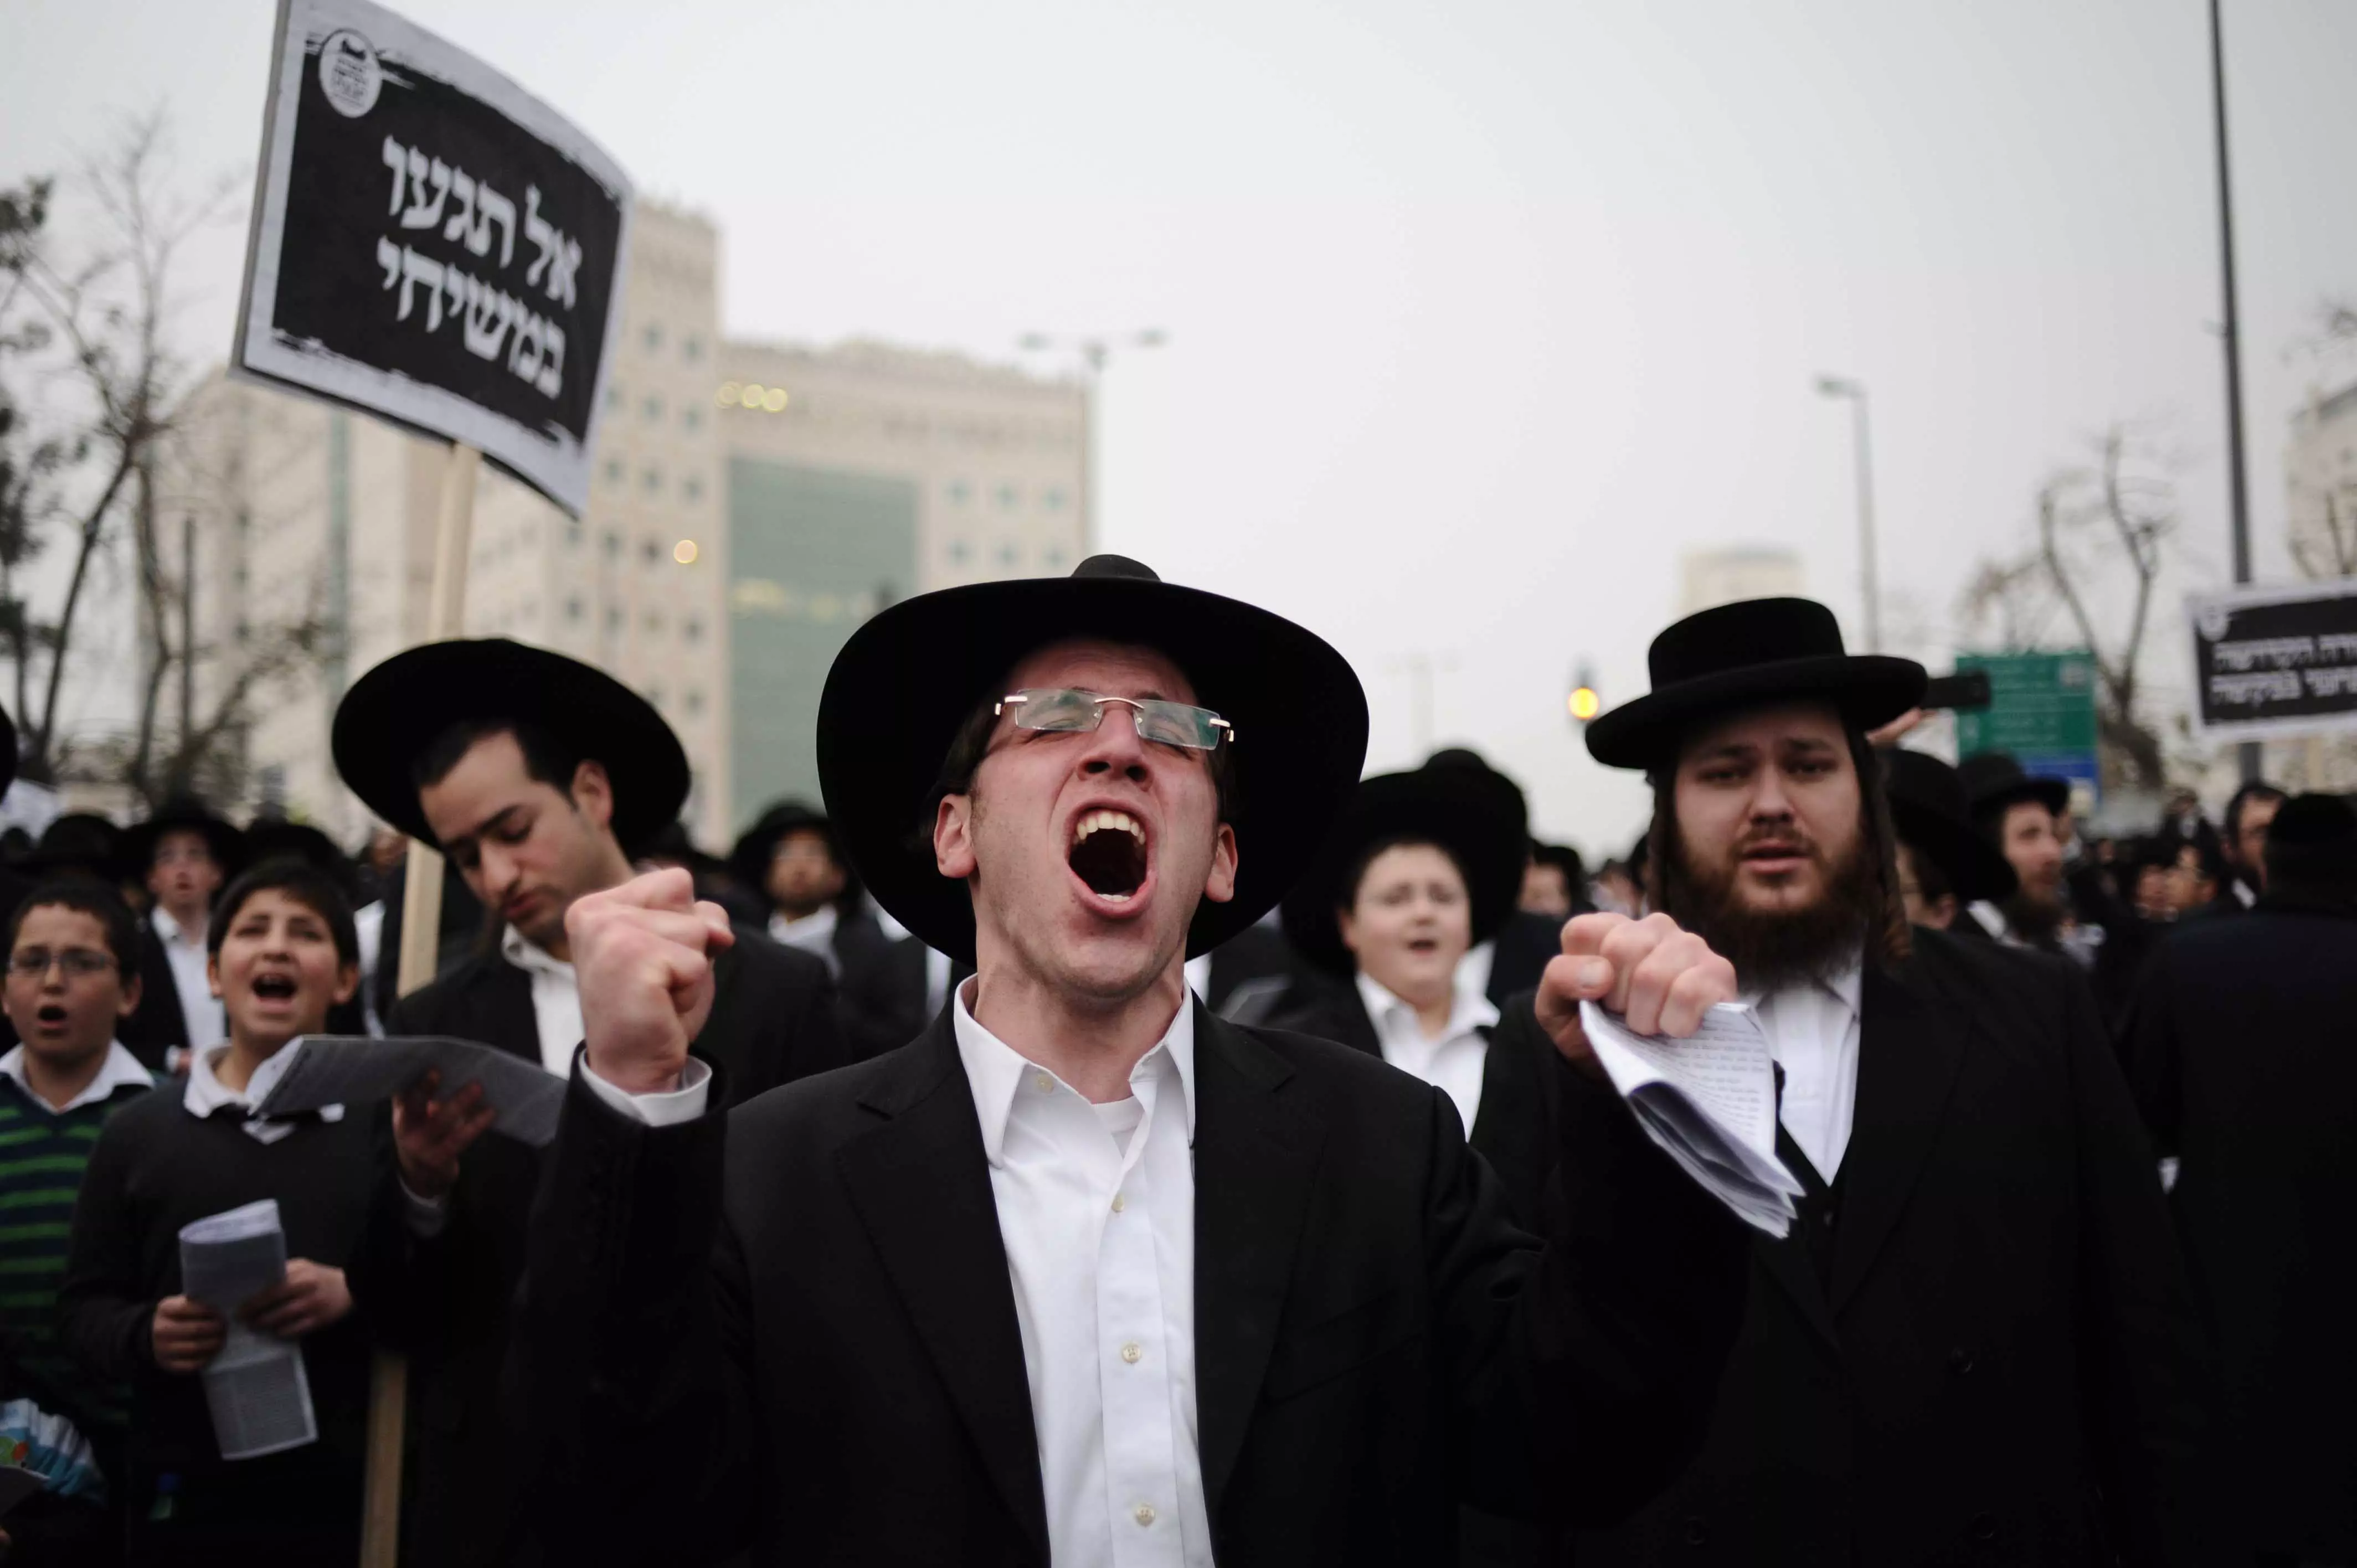 הקהילה מאורגנת, האם מדובר באיומי סרק? הפגנת המיליון בירושלים